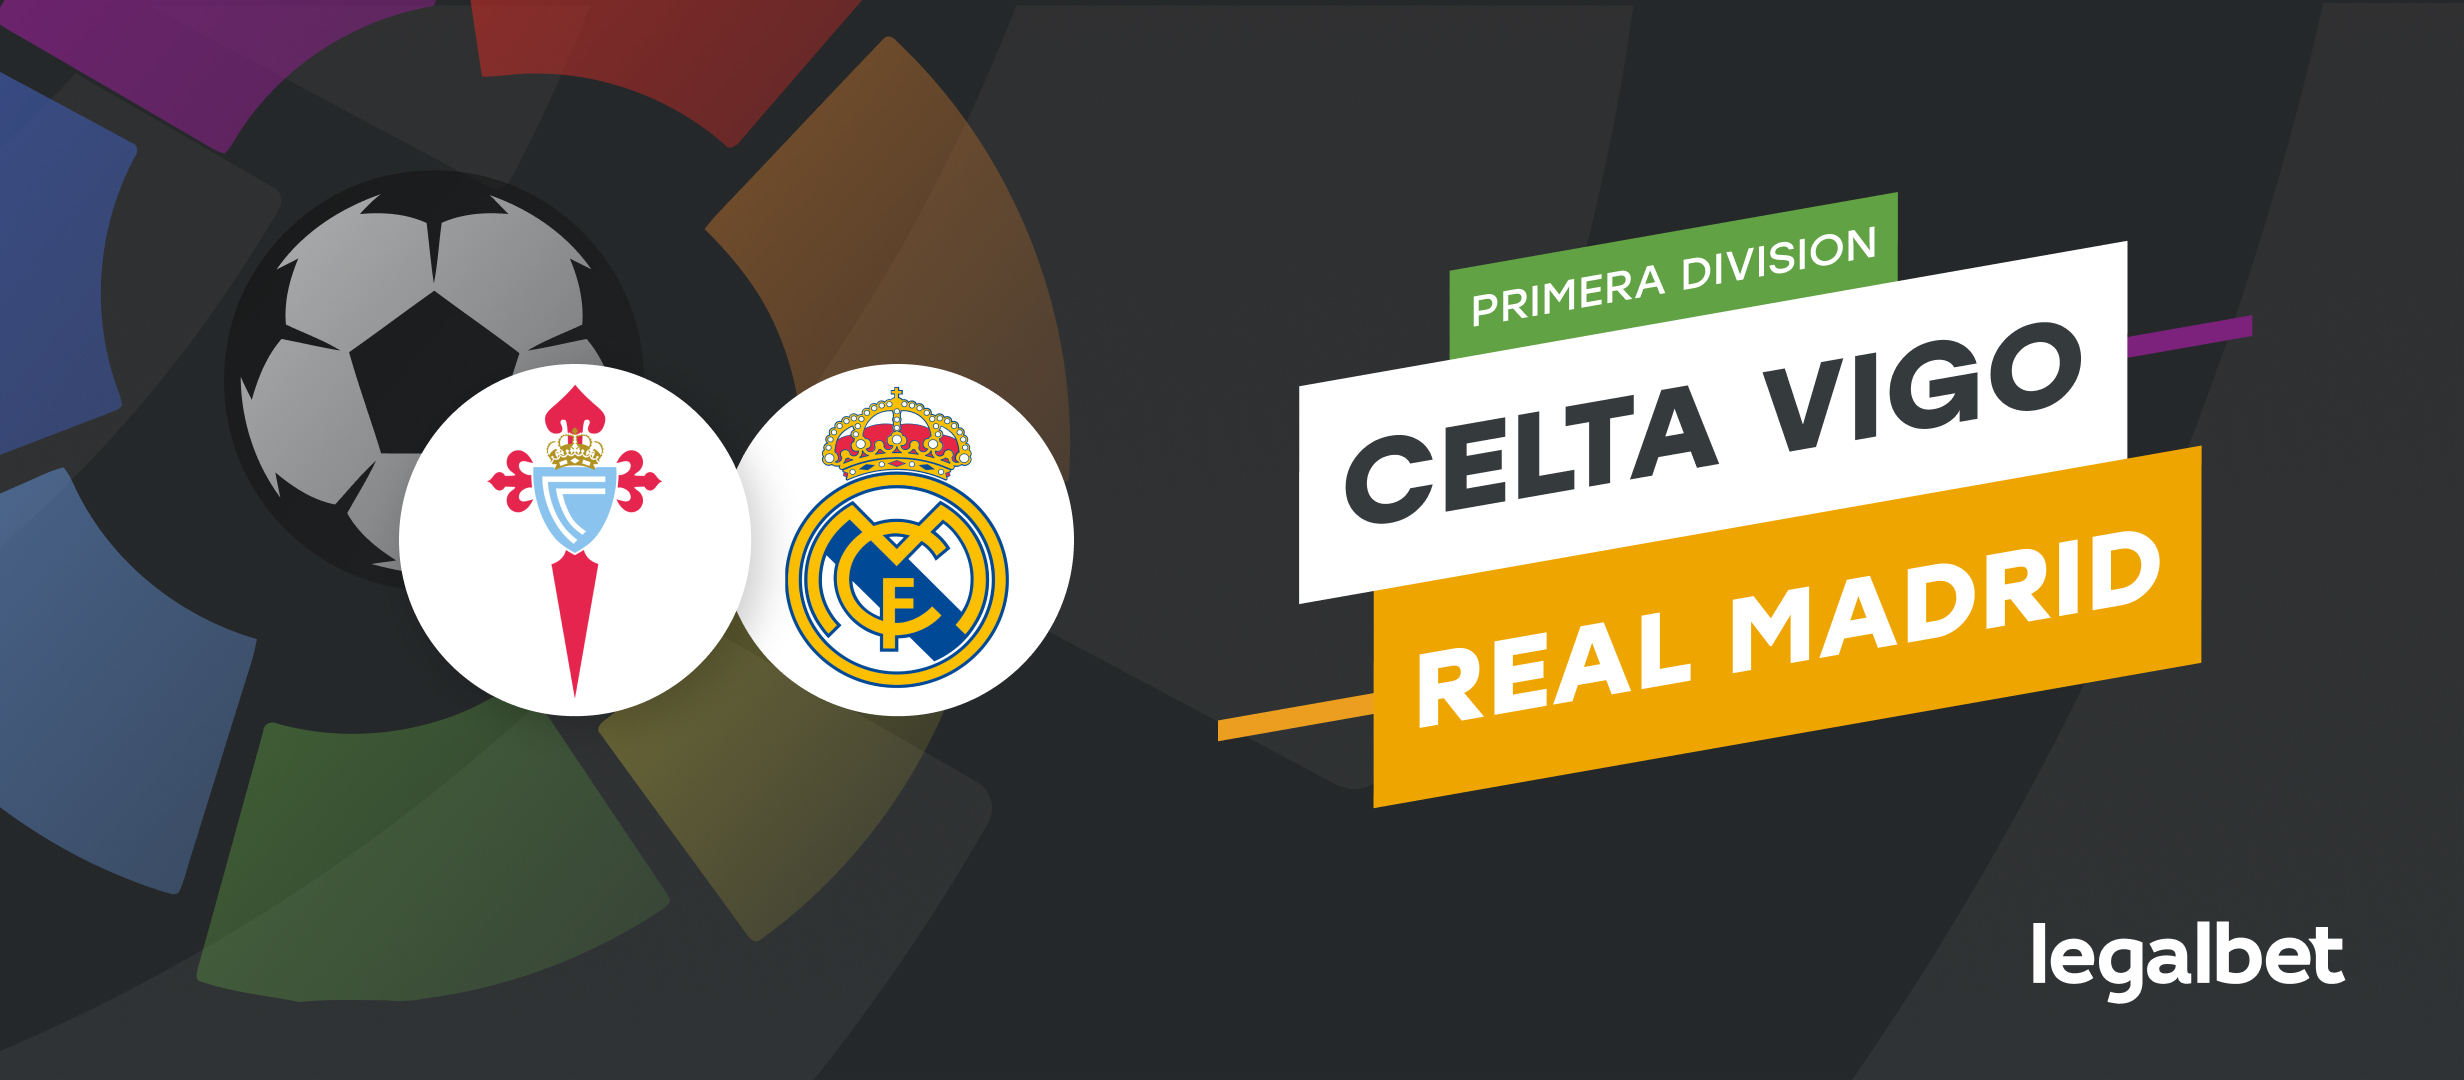 Celta Vigo vs Real Madrid – cote la pariuri, ponturi si informatii